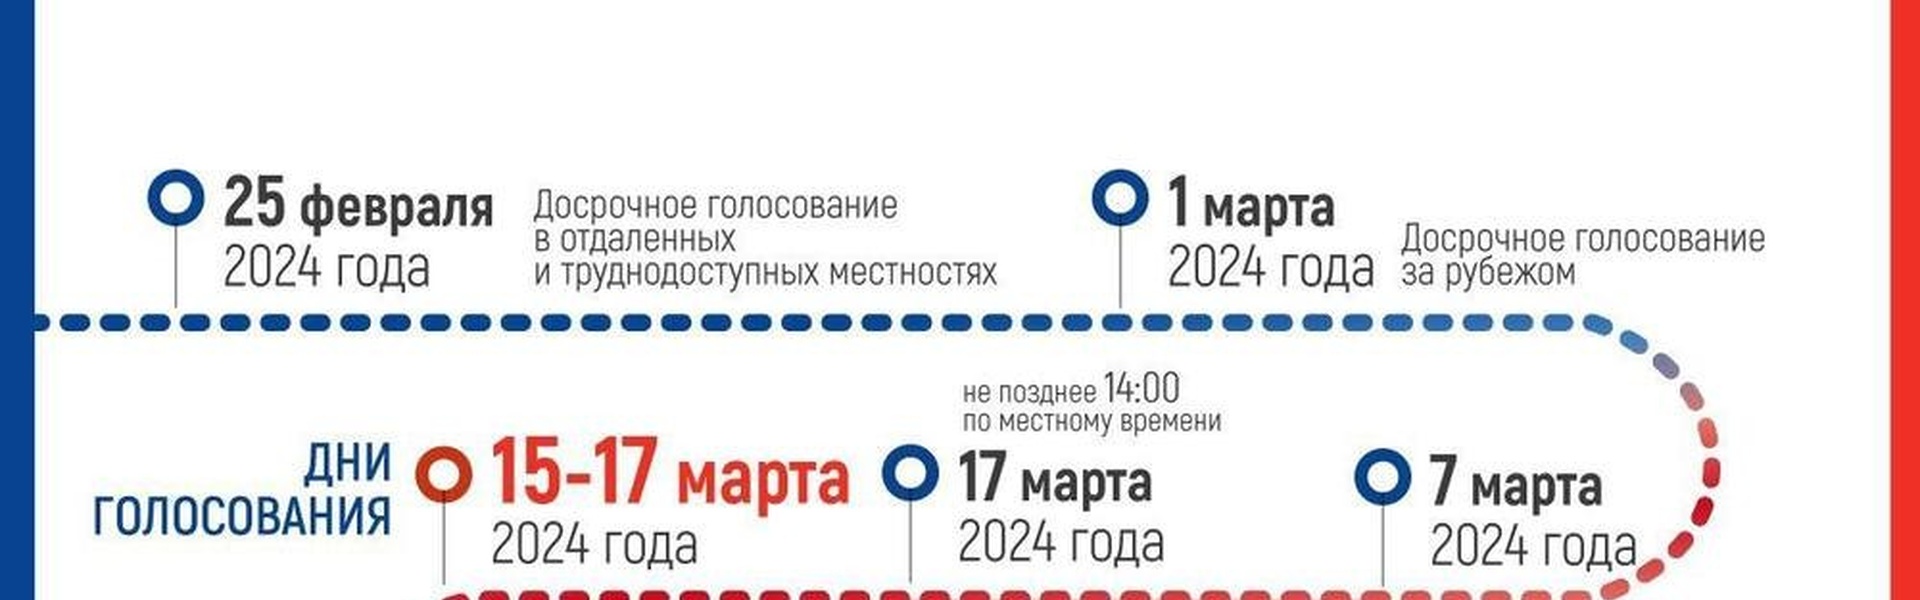 В марте 2024 года в России пройдут президентские выборы.